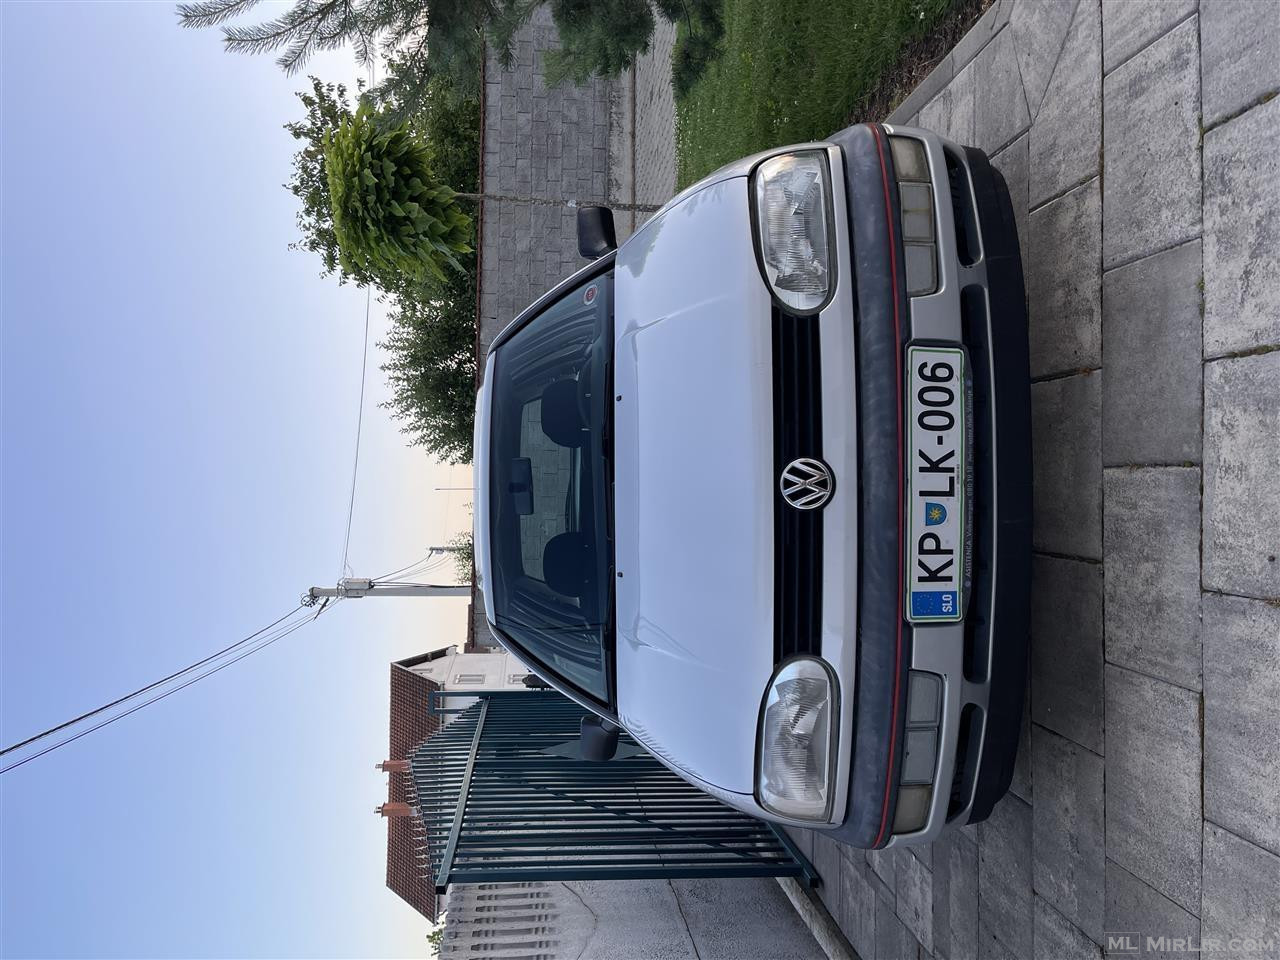 VW GOLF 3 1.8 BENZIN 4x4 SYNCRO PA DOGAN